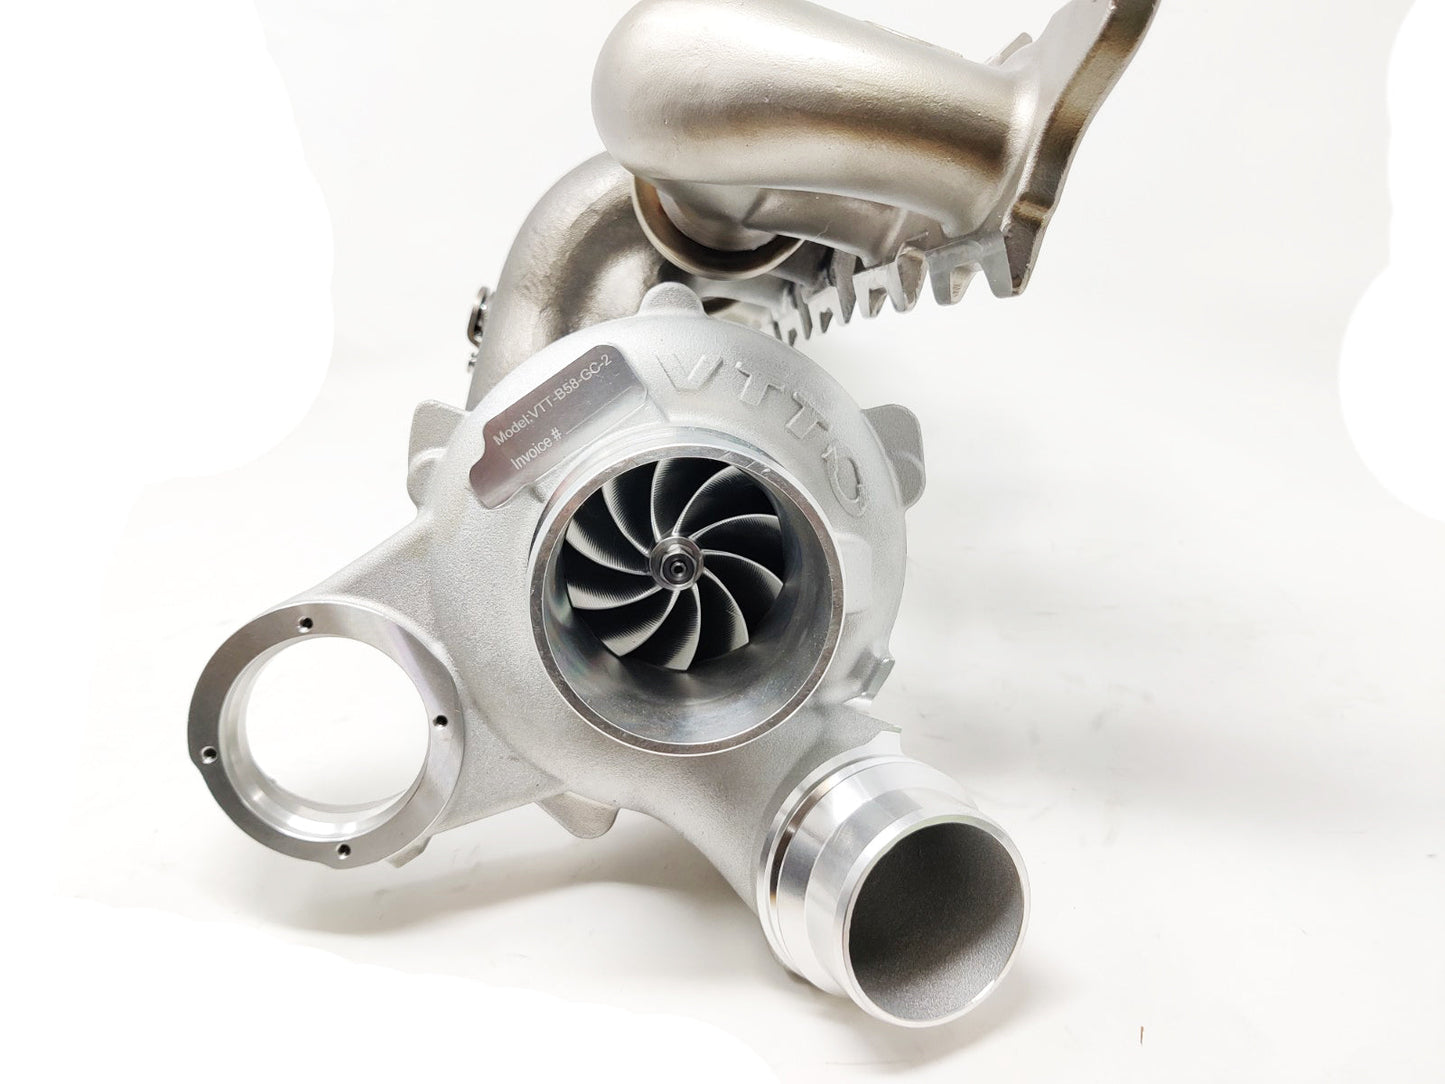 VTT - Actualización del turbocompresor B58 GC/GC+